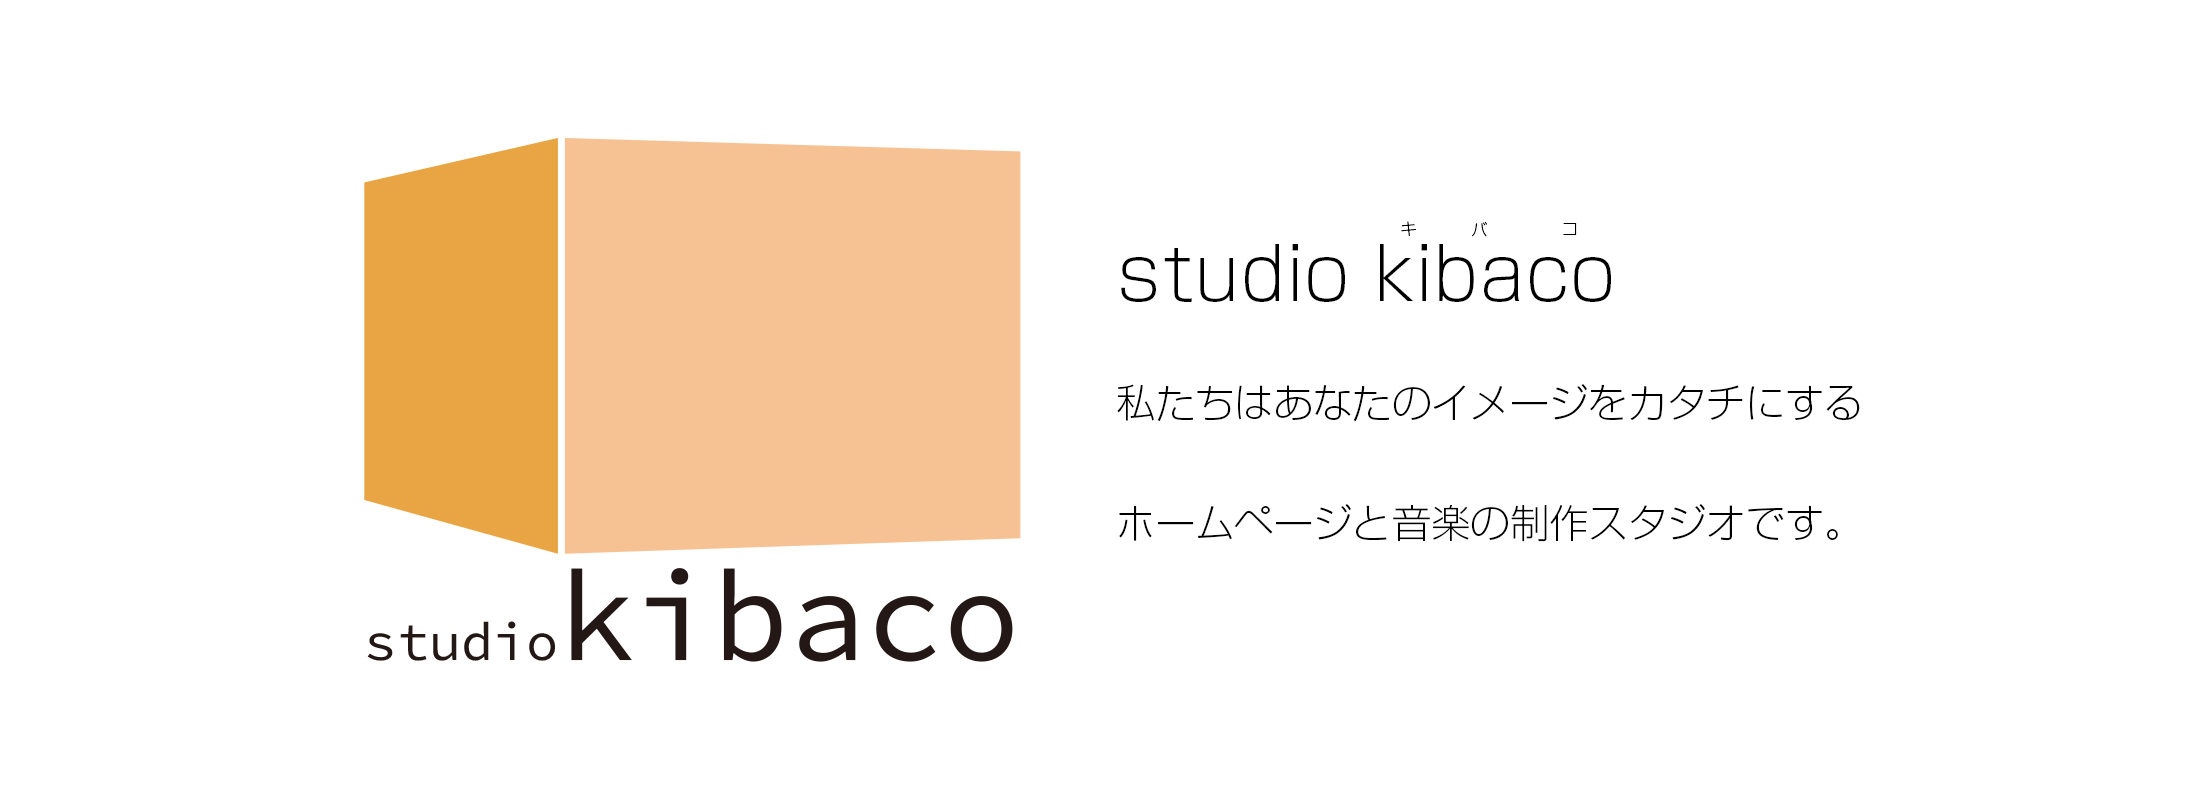 studio kibaco